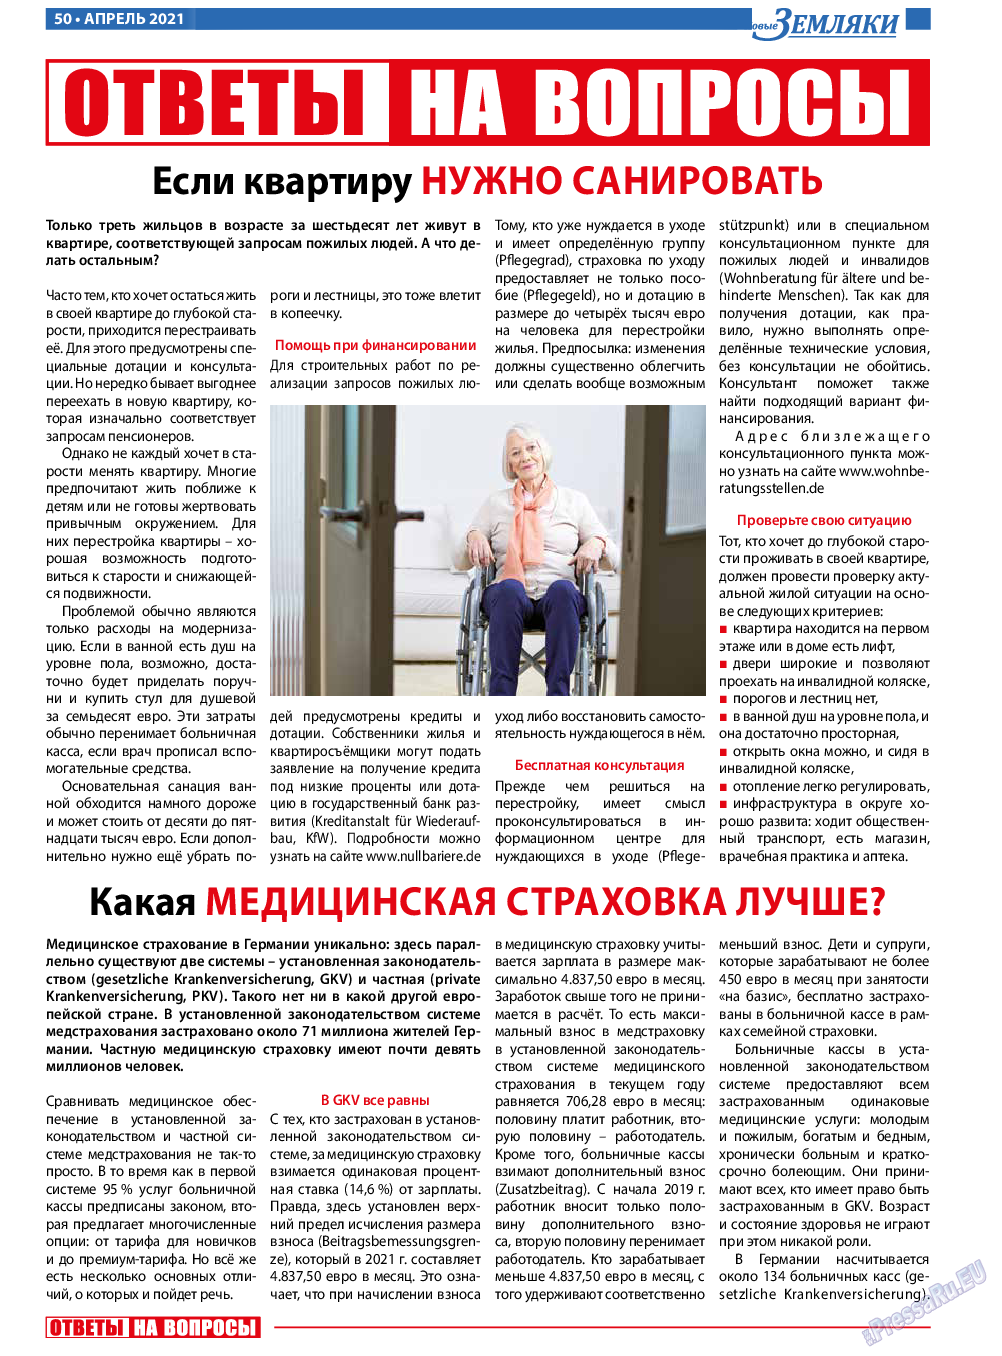 Новые Земляки, газета. 2021 №4 стр.50